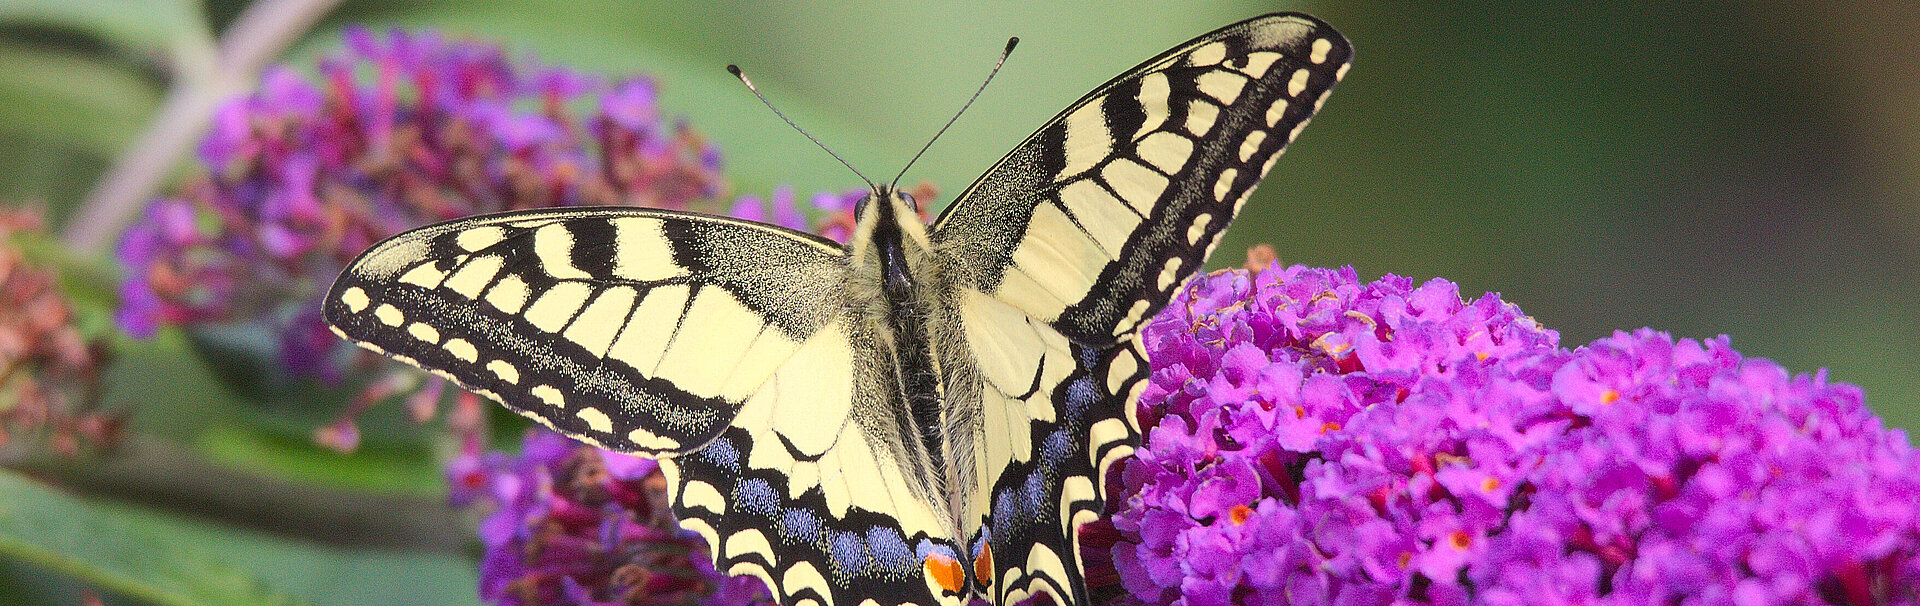 Schmetterling sitzt auf lila Blüte eines Sommerfliederstrauchs